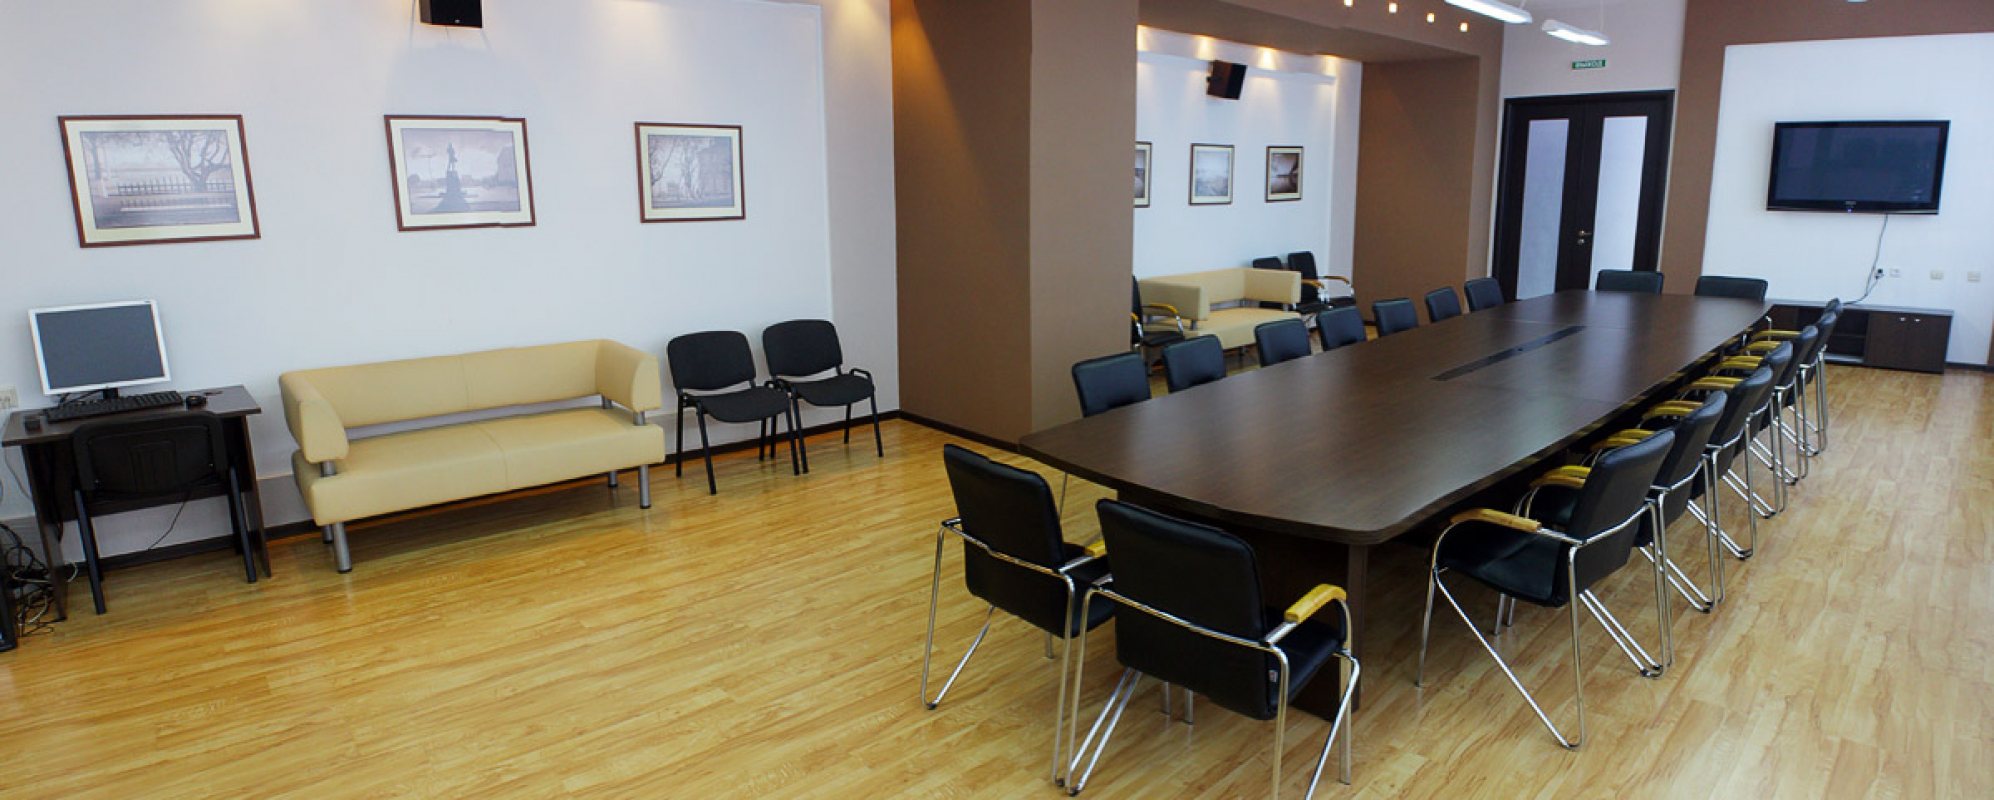 Фотографии конференц-зала Конференц-зал на 35 посадочных мест Национальной библиотеки Чувашской Республики